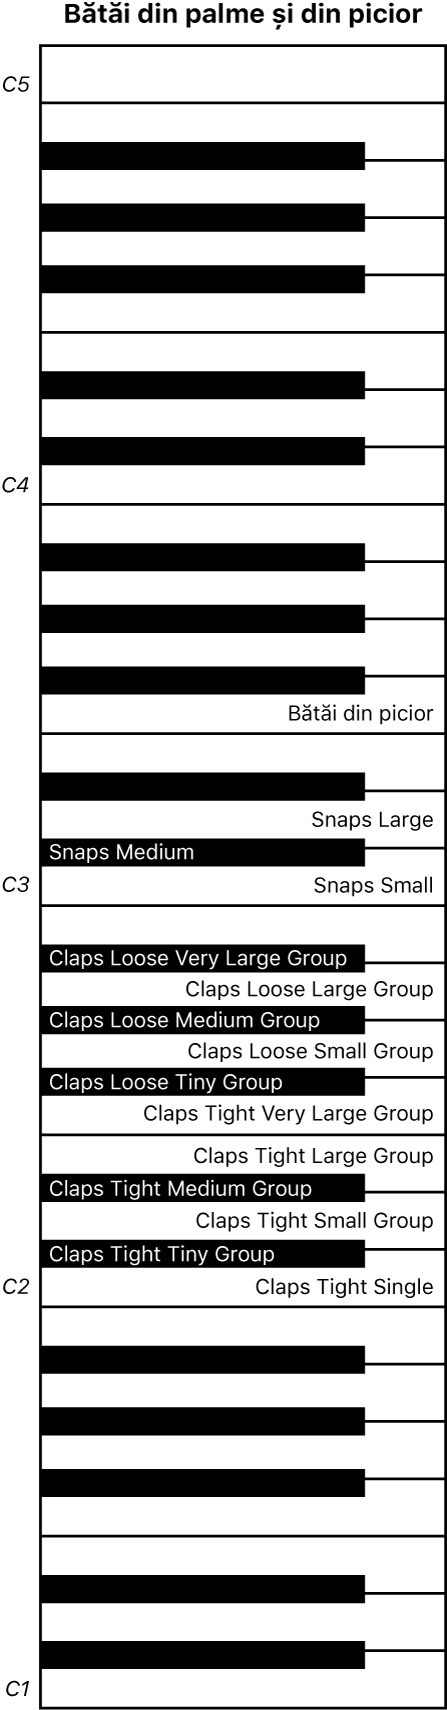 Figură. Harta claviaturii pentru interpretarea Claps and Snaps.